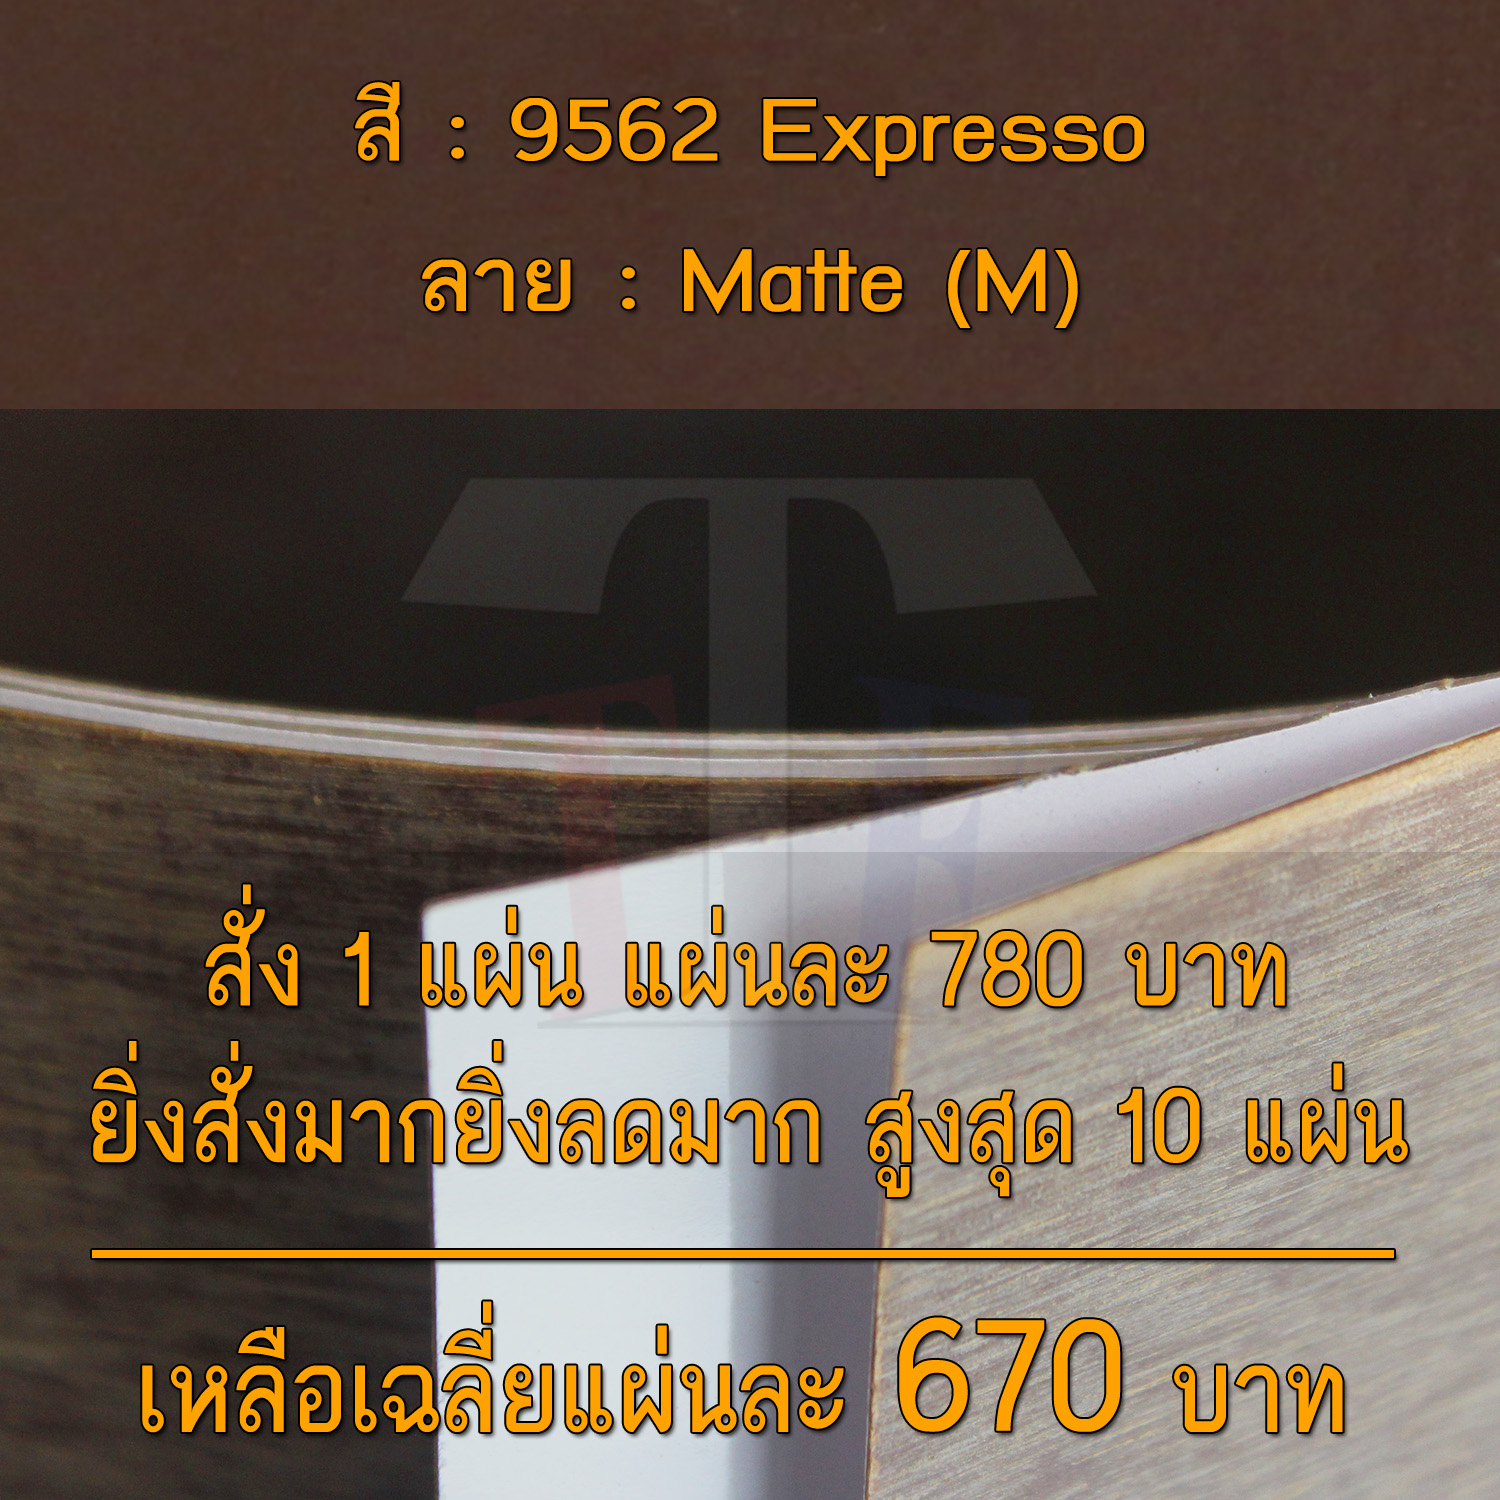 แผ่นโฟเมก้า แผ่นลามิเนต ยี่ห้อ TD Board สีน้ำตาล รหัส 9562 Expresso พื้นผิวลาย Matte (M) ขนาด 1220 x 2440 มม. หนา 0.70 มม. ใช้สำหรับงานตกแต่งภายใน งานปิดผิวเฟอร์นิเจอร์ ผนัง และอื่นๆ เพื่อเพิ่มความสวยงาม formica laminate 9562M